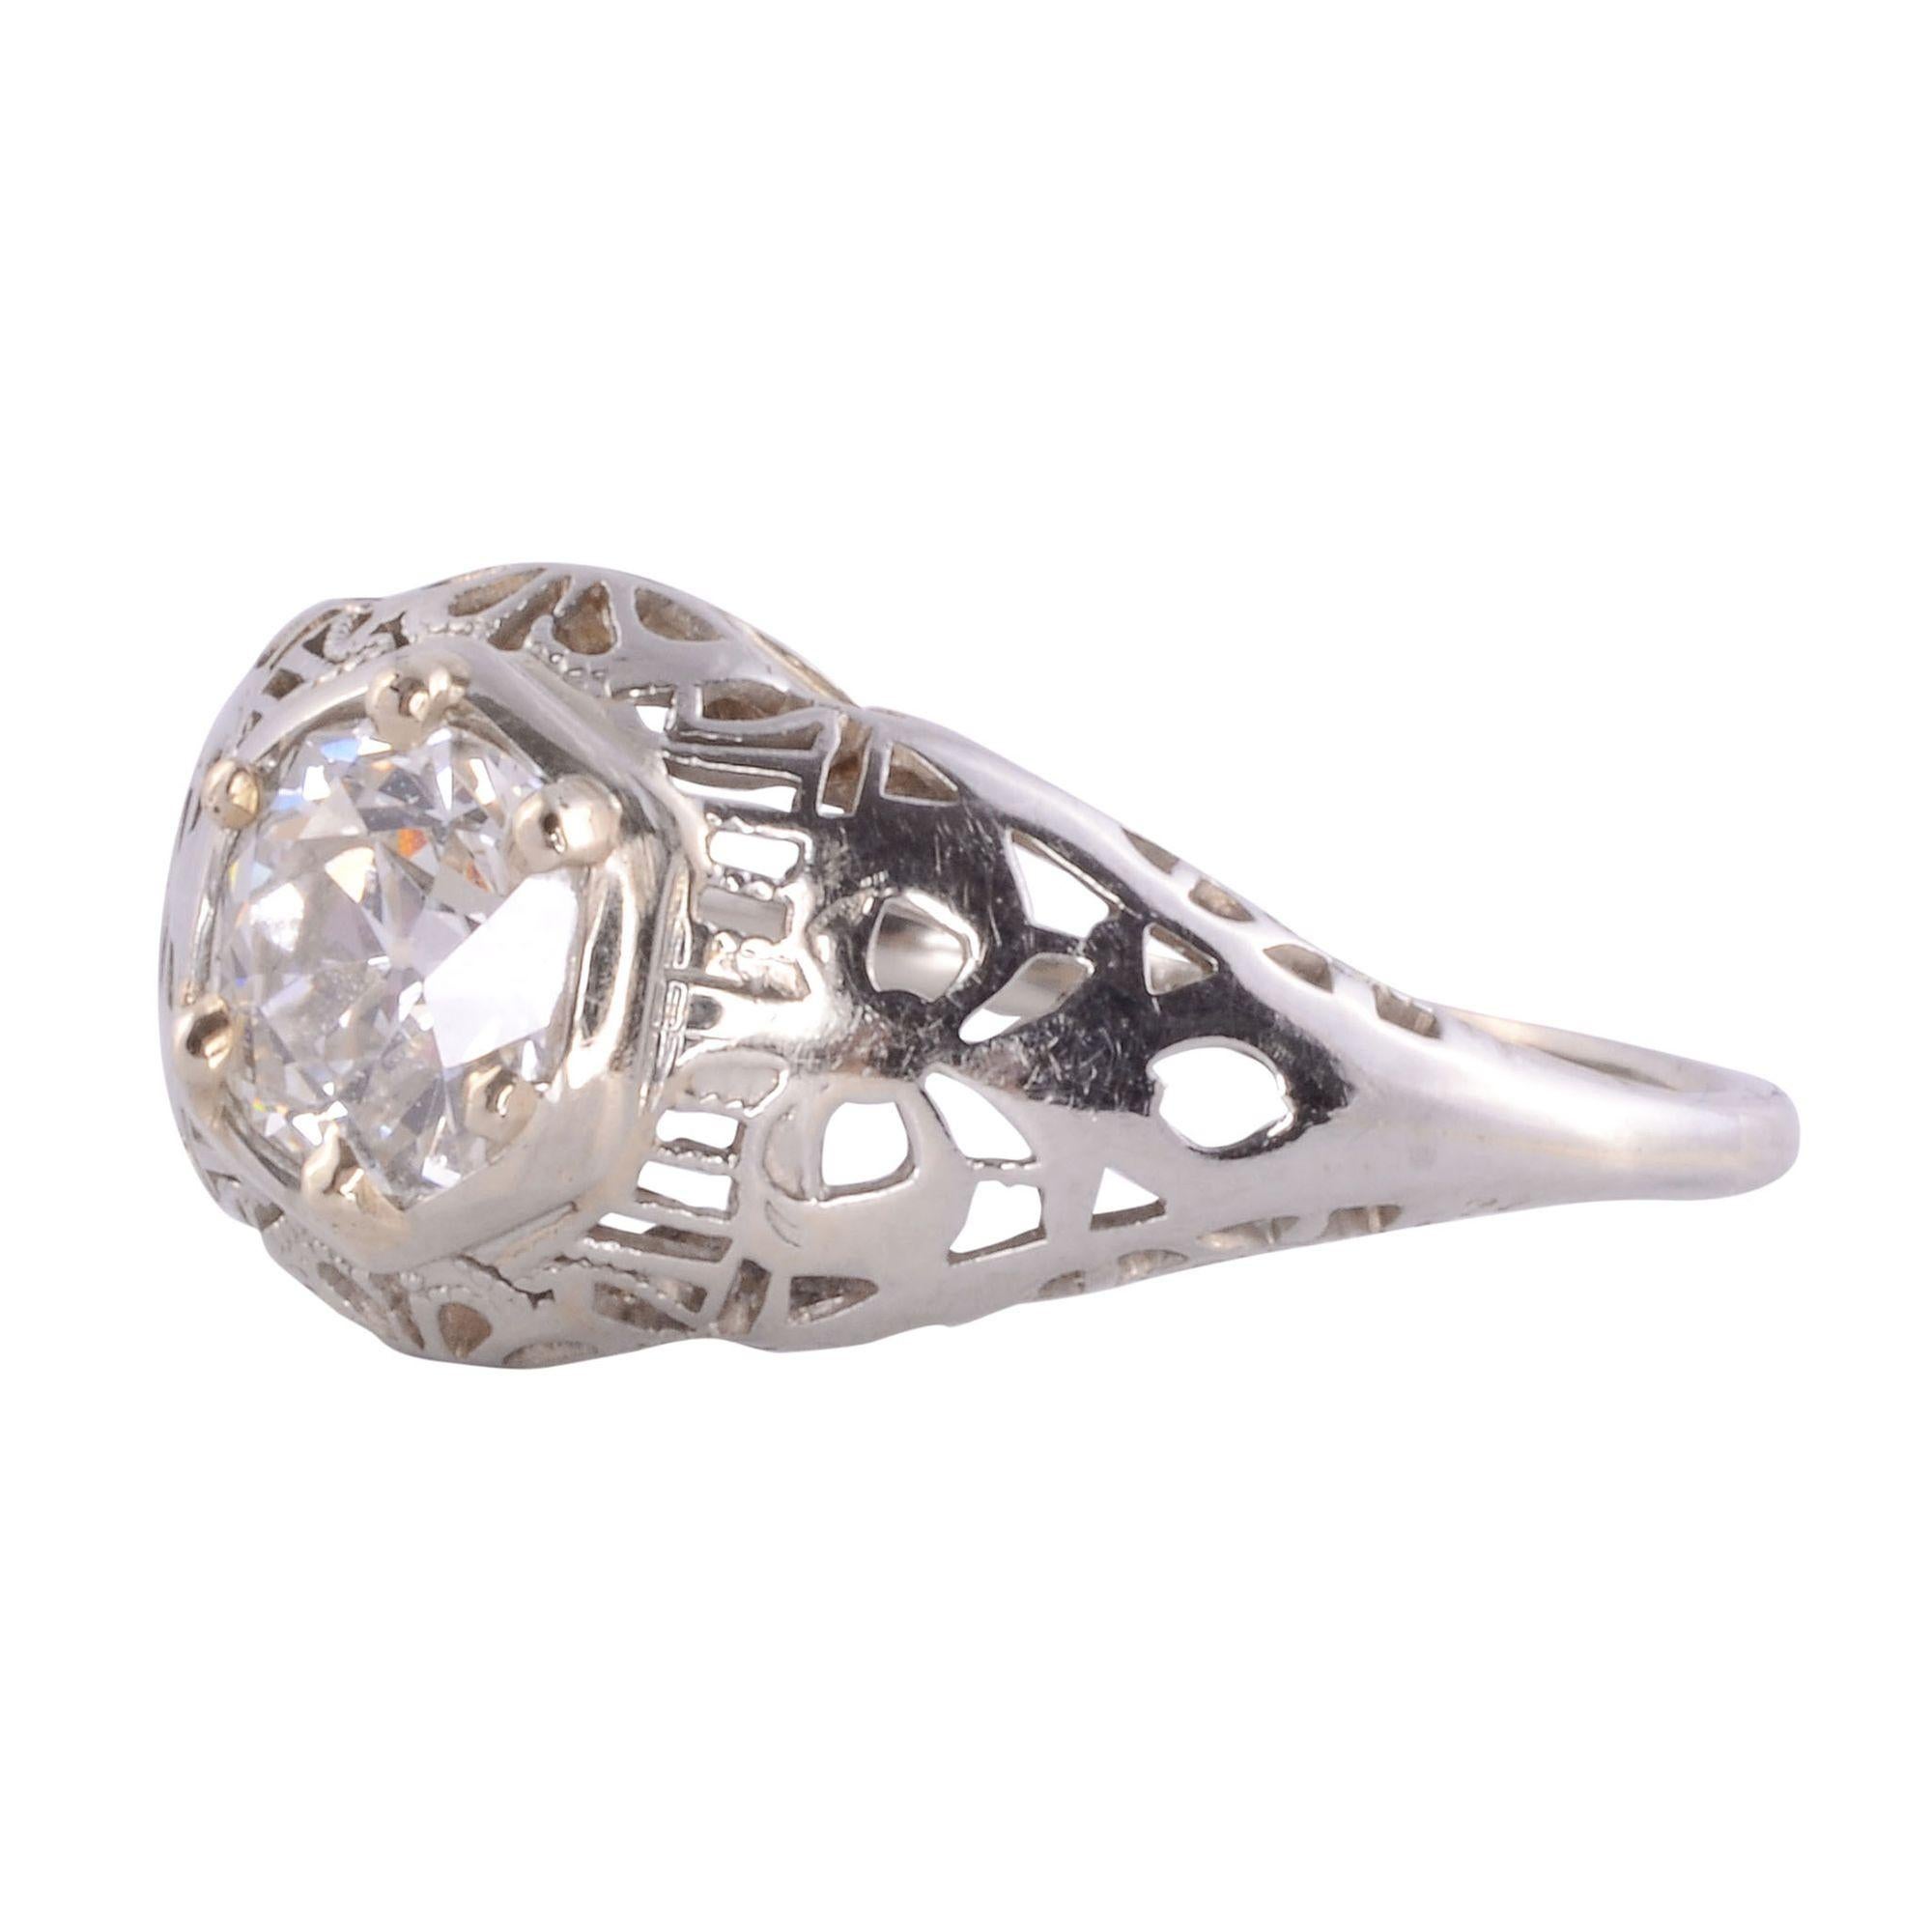 Vintage Verlobungsring mit durchbrochener Fassung und VS1-Diamanten, um 1930. Dieser Ring aus 14 Karat Weißgold enthält einen runden Diamanten von 0,65 Karat in einer durchbrochenen Fassung. Der Diamant hat die Reinheit VS1 und die Farbe G-H. Dieser